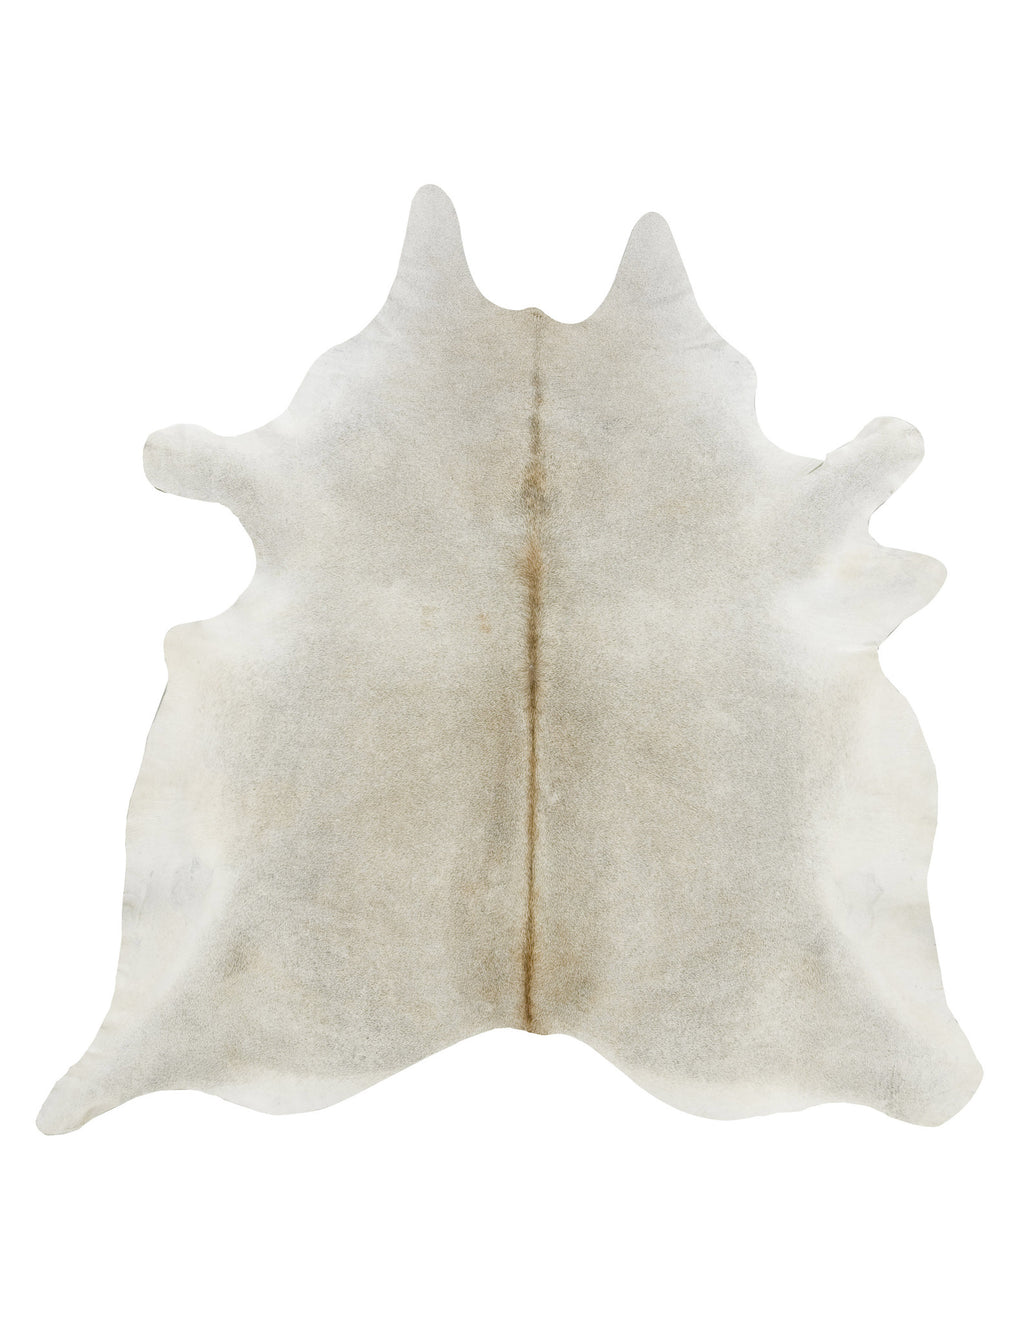 Large Gray beige solid cowhide rug